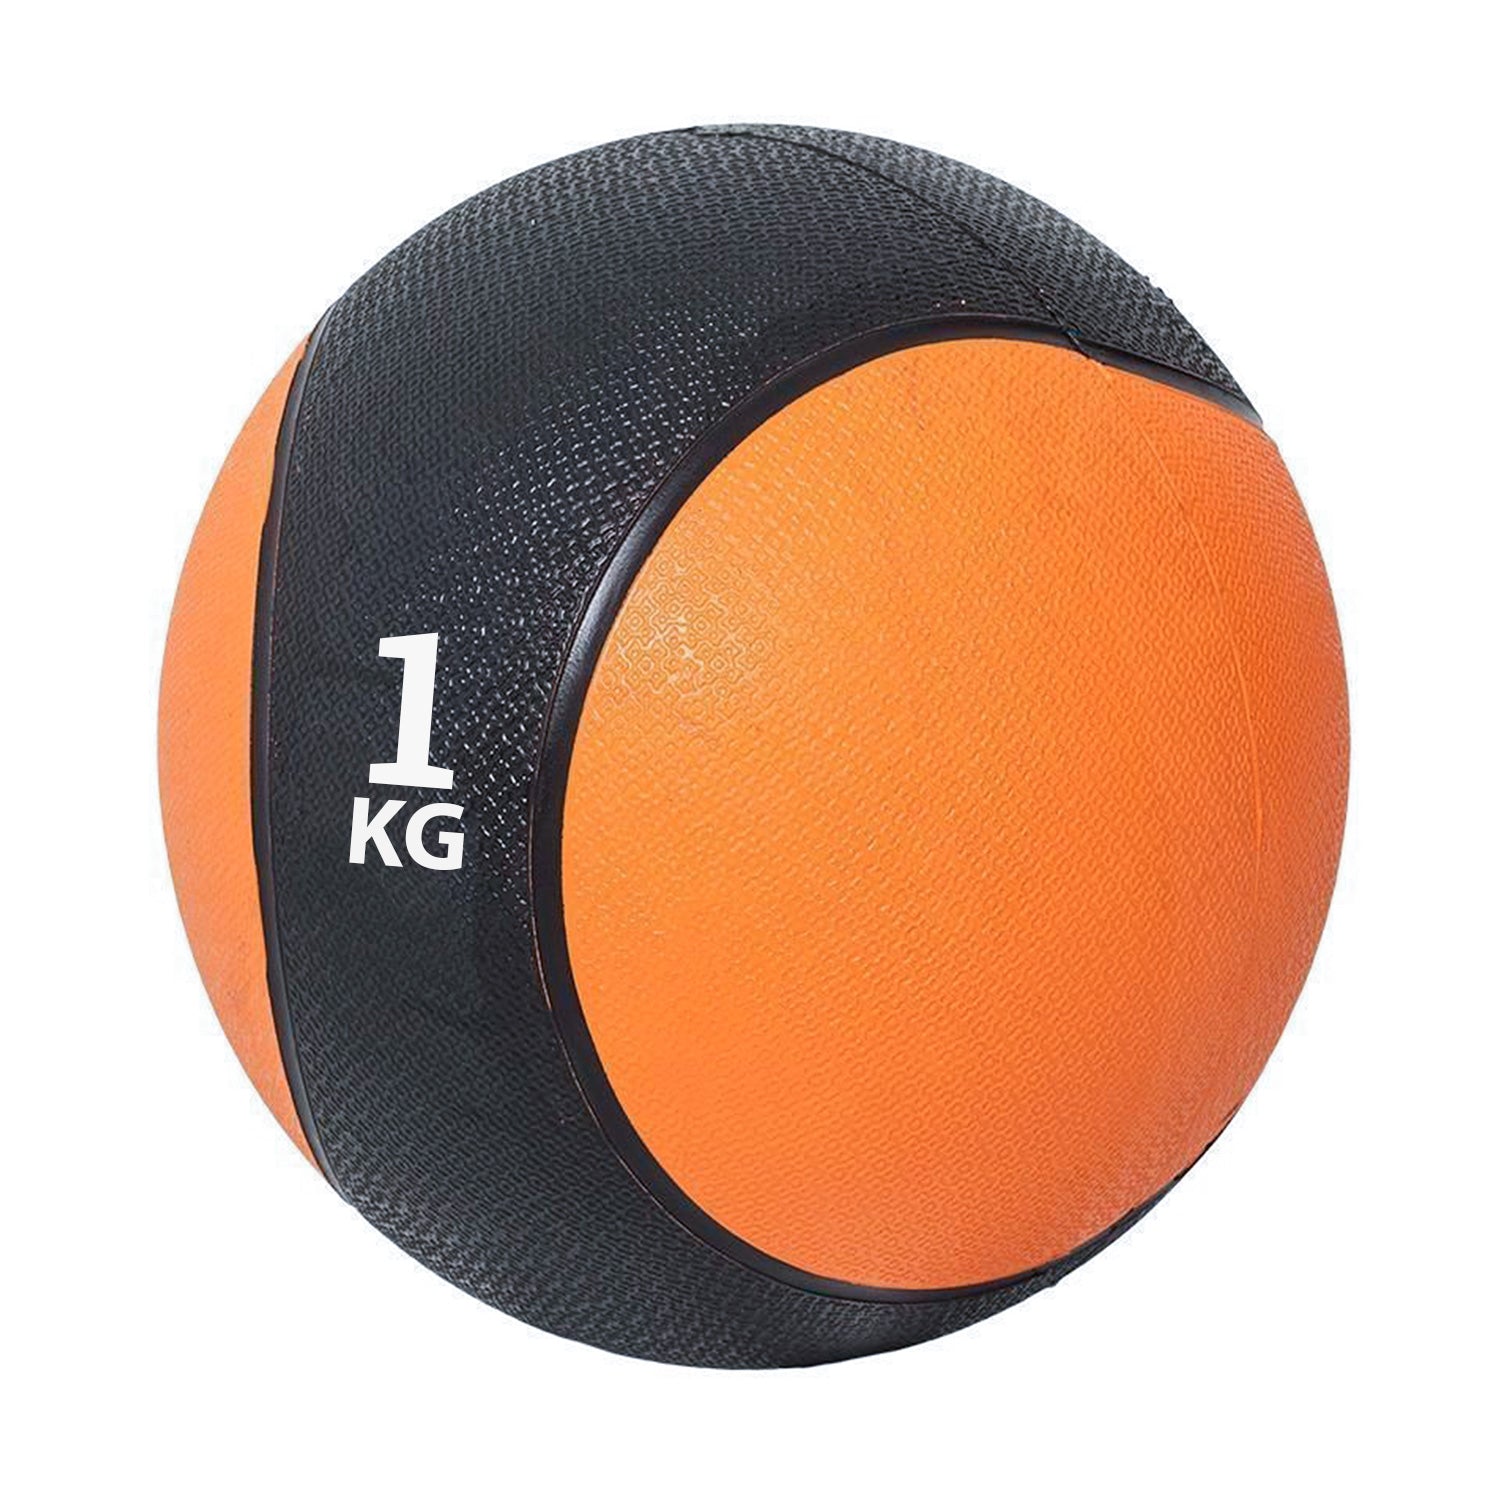 كرة طبية من المطاط لاعادة التأهيل و اللياقة البدنية - لون اسود و برتقالي - وزن 1 كيلو جرام - Kanteen - كانتين